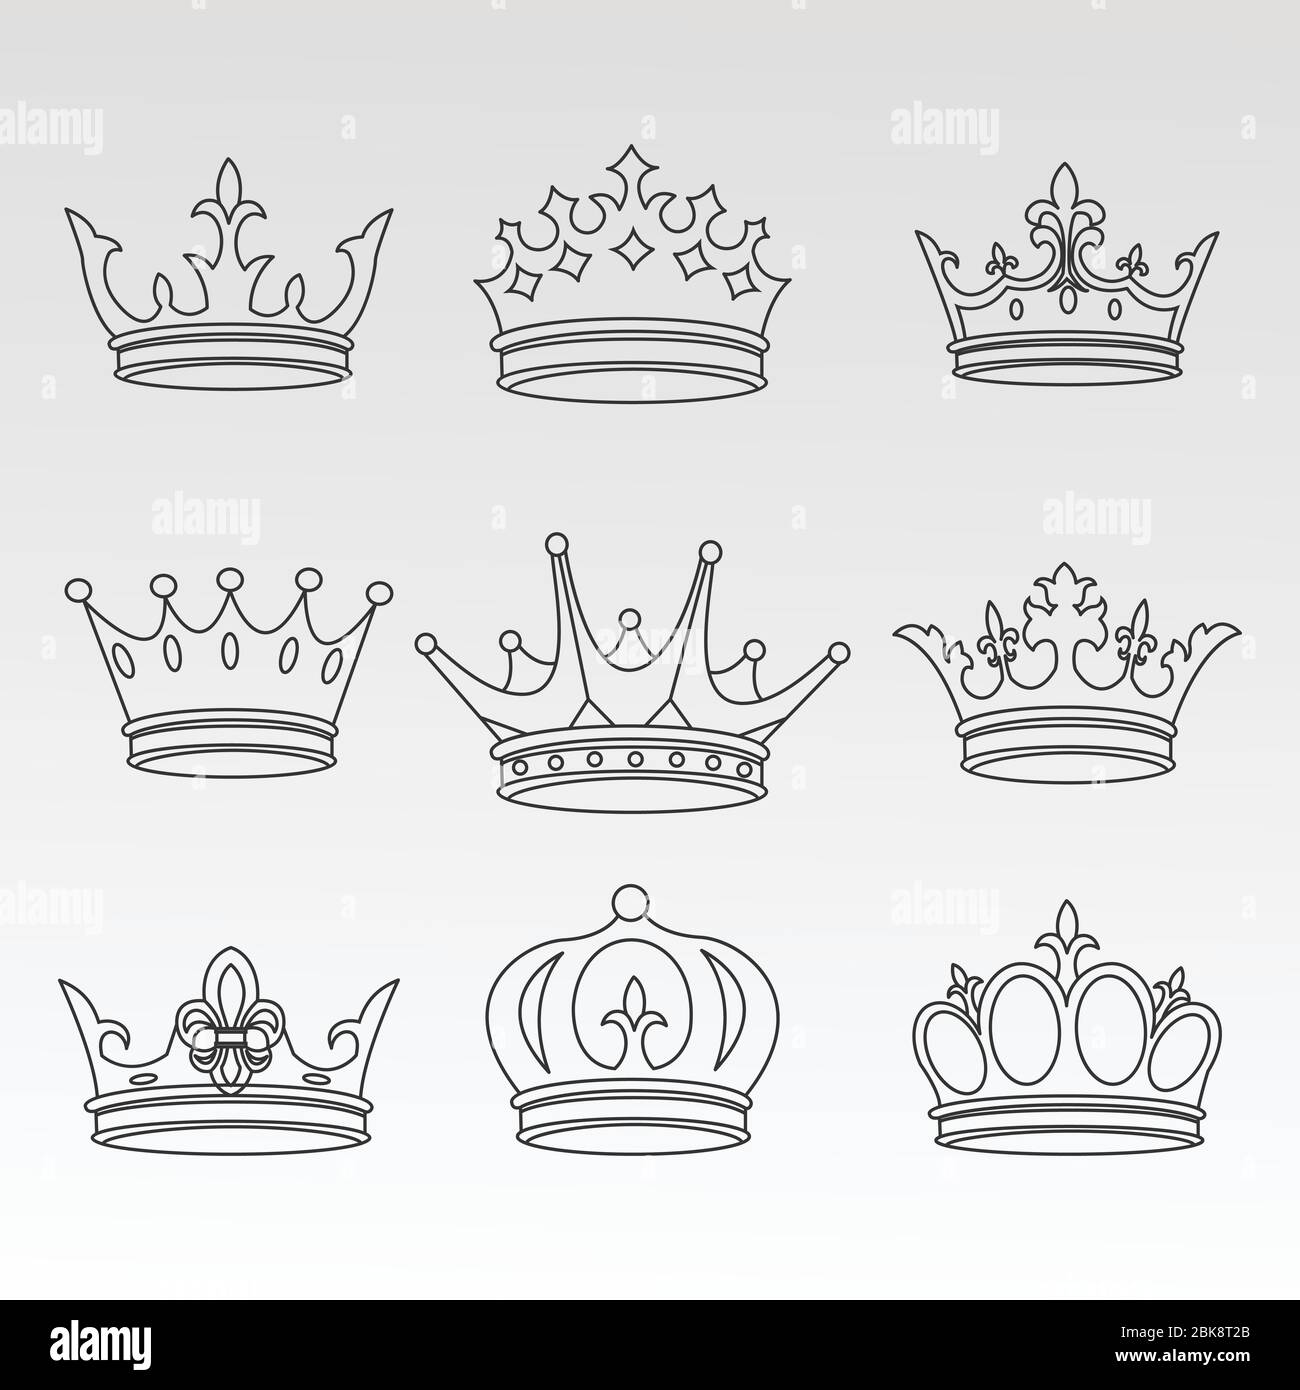 jeu de symboles couronne avec bijoux royaux dorés. isolé sur fond